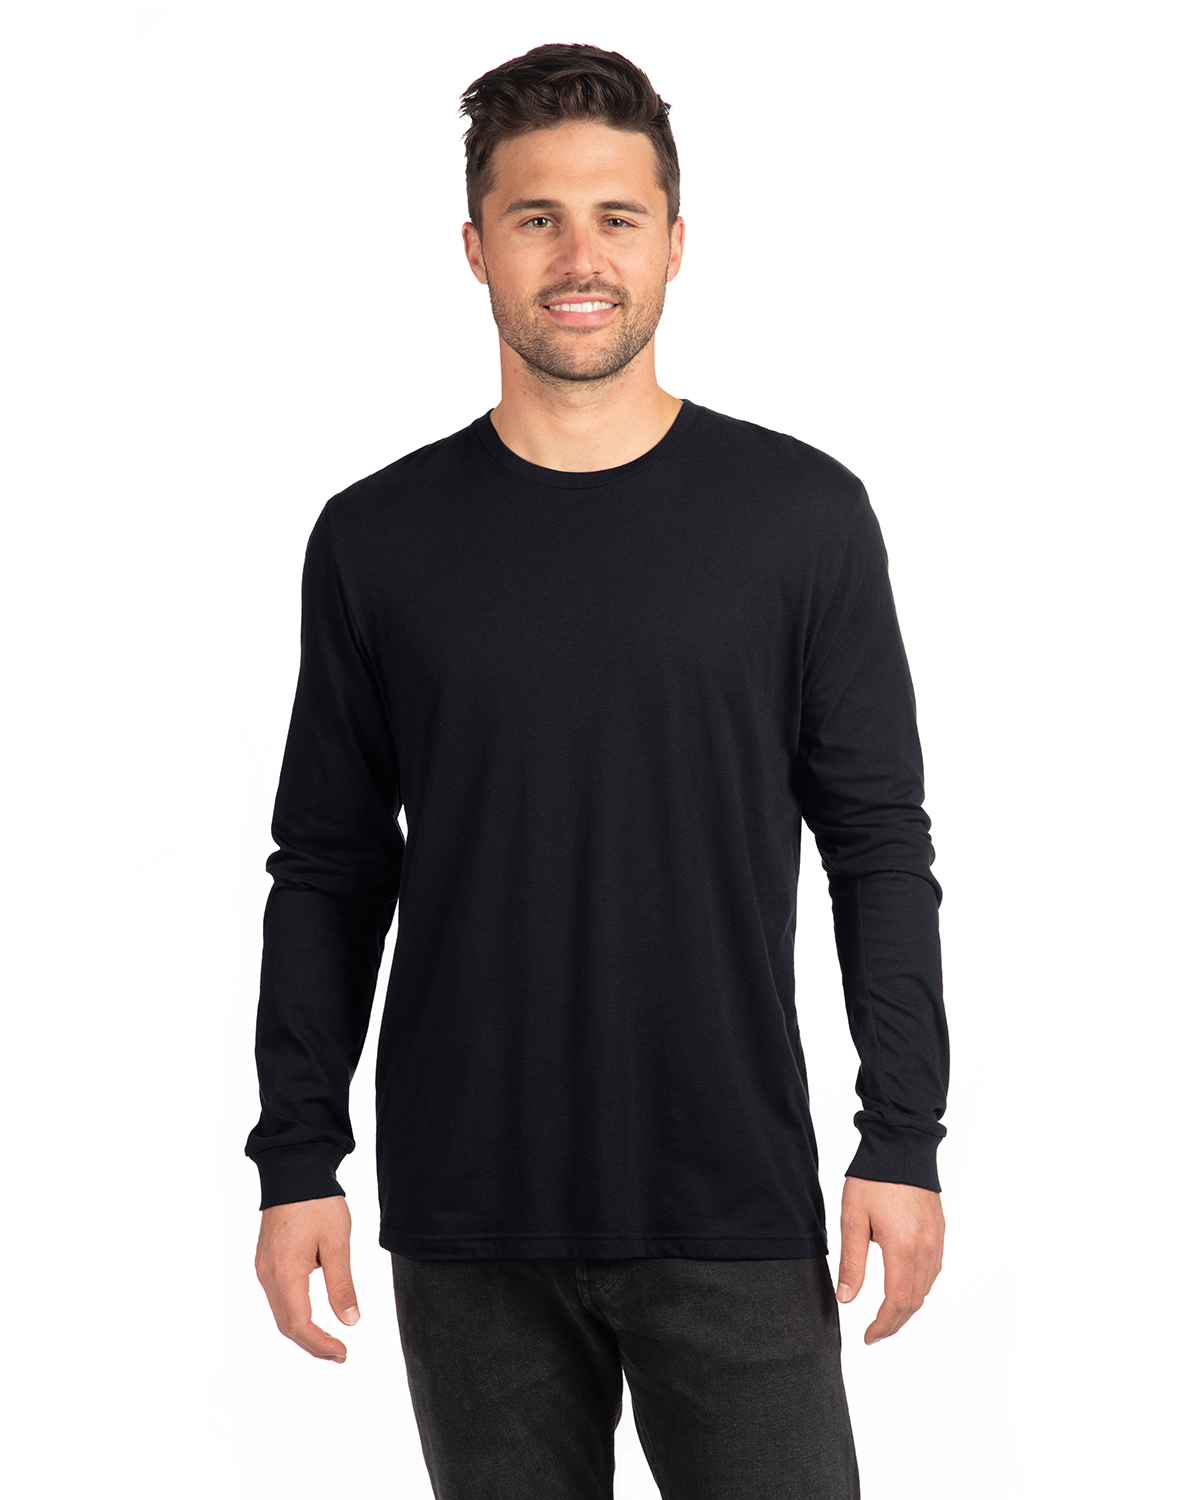 | Cvc Sleeve Shirts Nl Next T Shirt Long Adult 6211 Level Jiffy